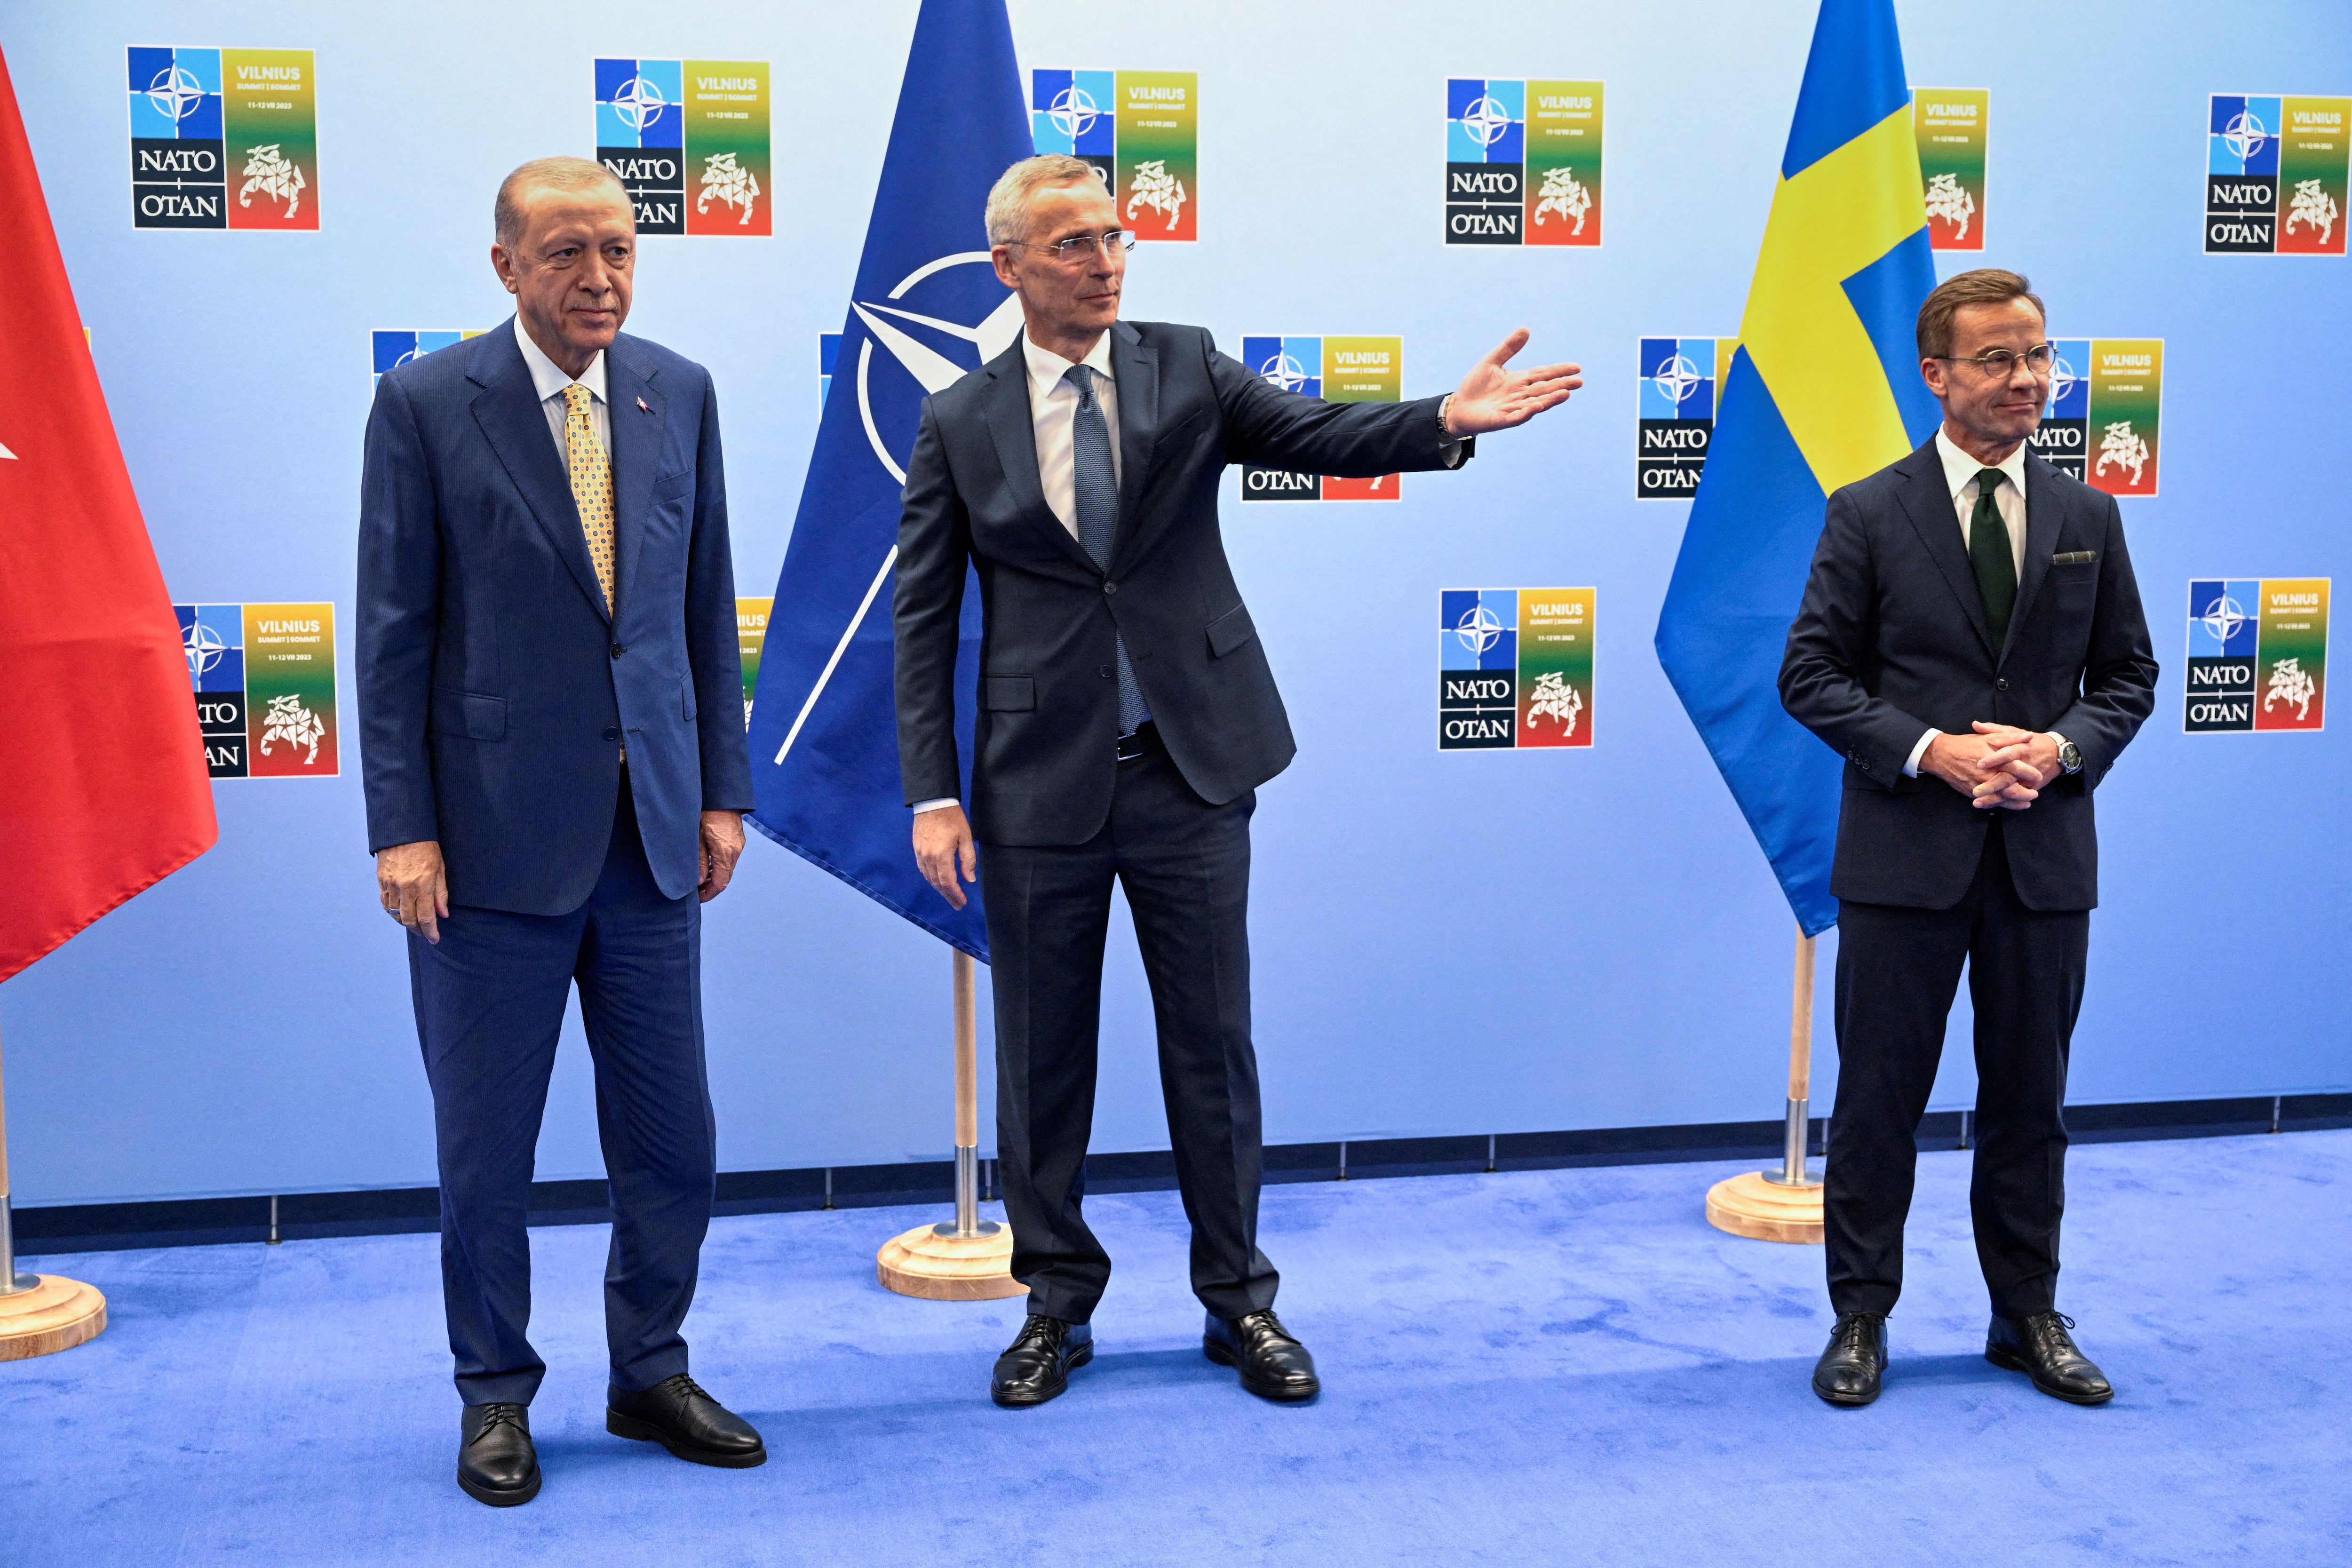 El presidente turco Tayyip Erdogan, el primer ministro sueco Ulf Kristersson y el secretario general de la OTAN Jens Stoltenberg (Henrik Montgomery /TT News Agency/via REUTERS)